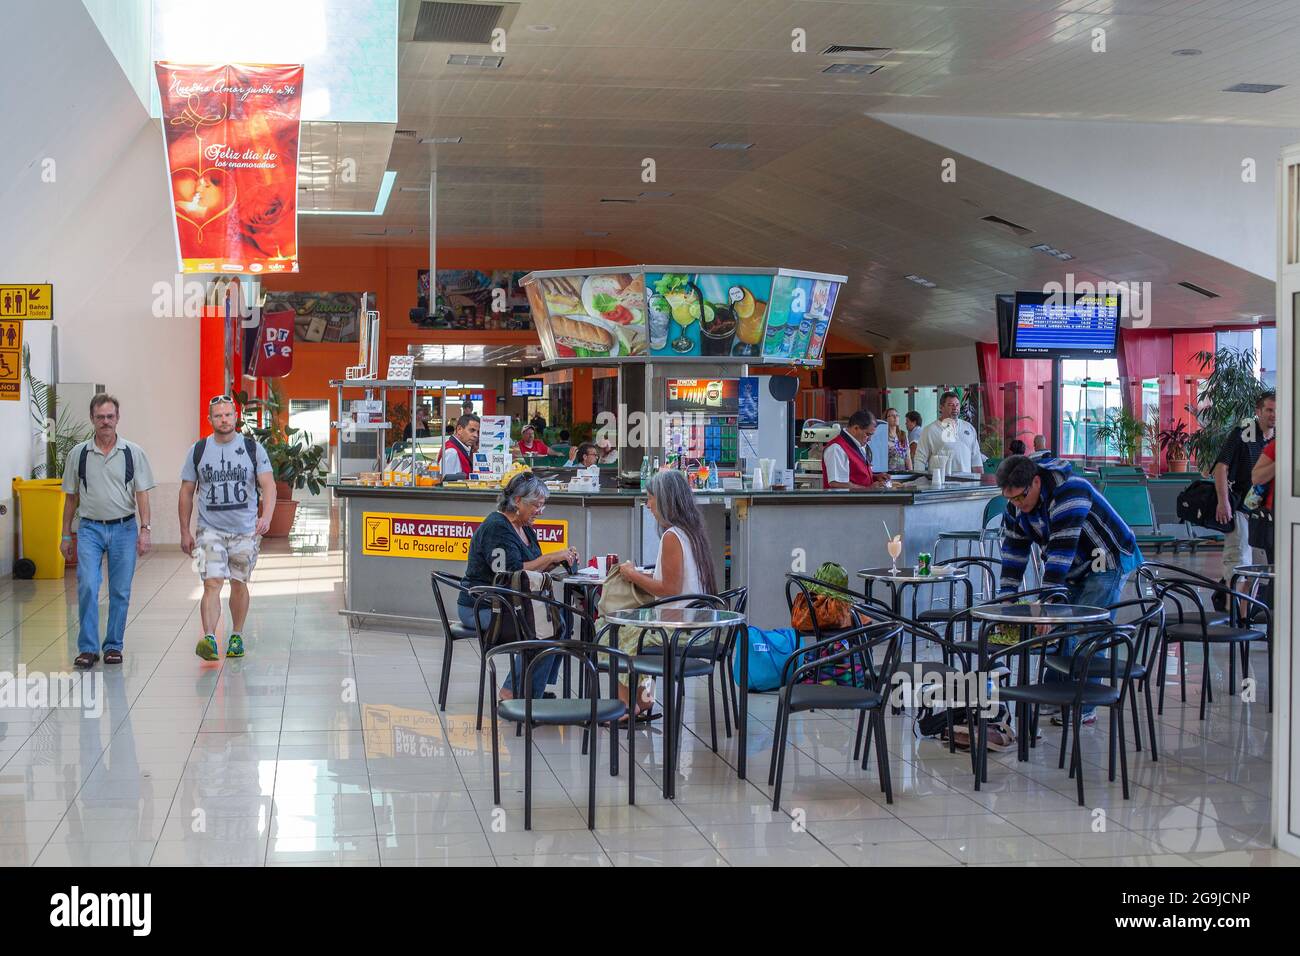 Varedero Airport Cafe Bar La Pasarela Serviert Den Passagieren Kaffee Und Bier In Der Abfluglounge Des Flughafens Varadero Auf Kuba Stockfoto